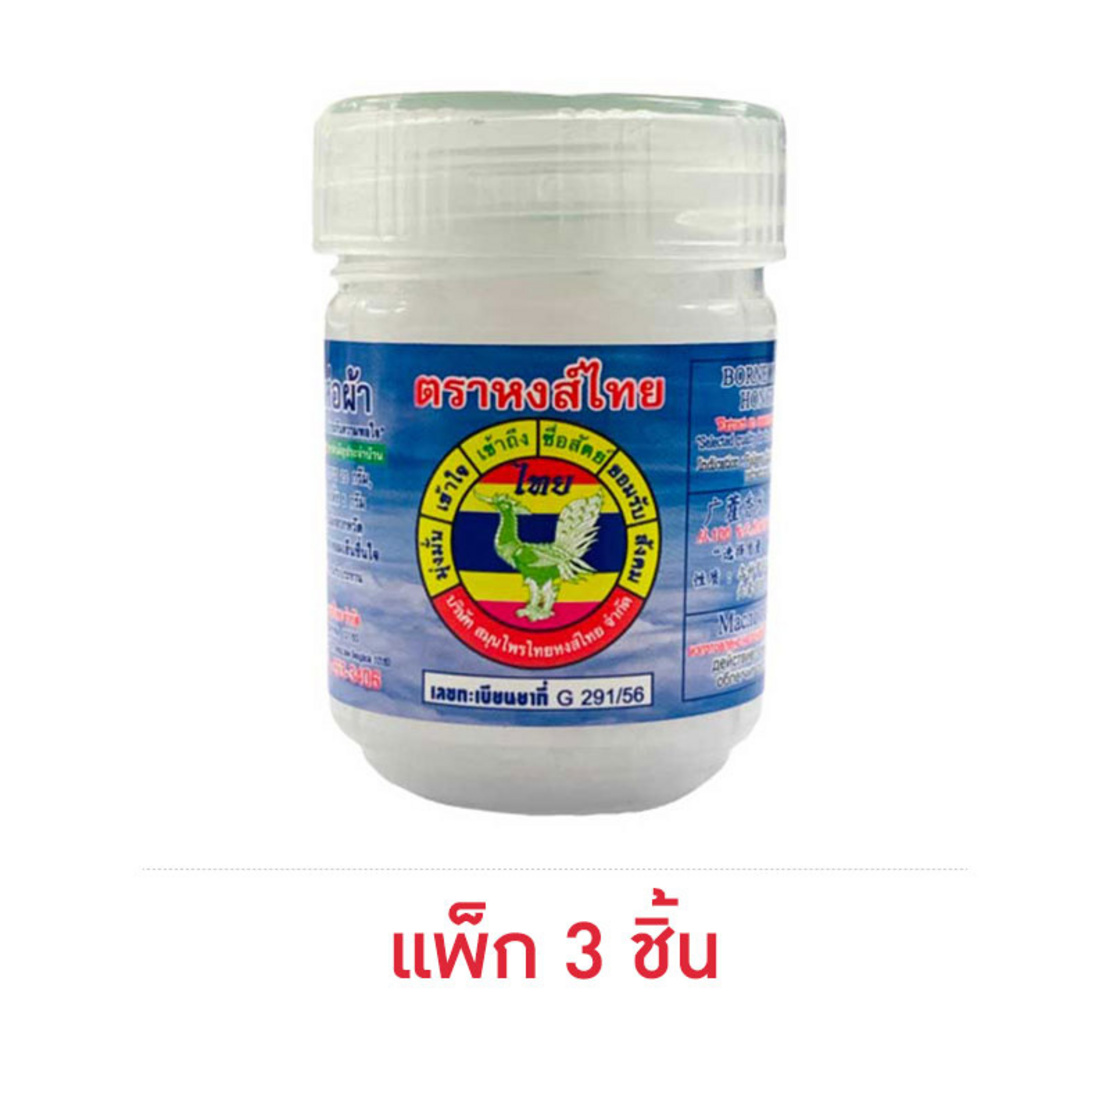 พิมเสนน้ำห่อผ้า ตราหงส์ไทย 8 ซีซี (แพ็ก 3 ชิ้น) | Allonline